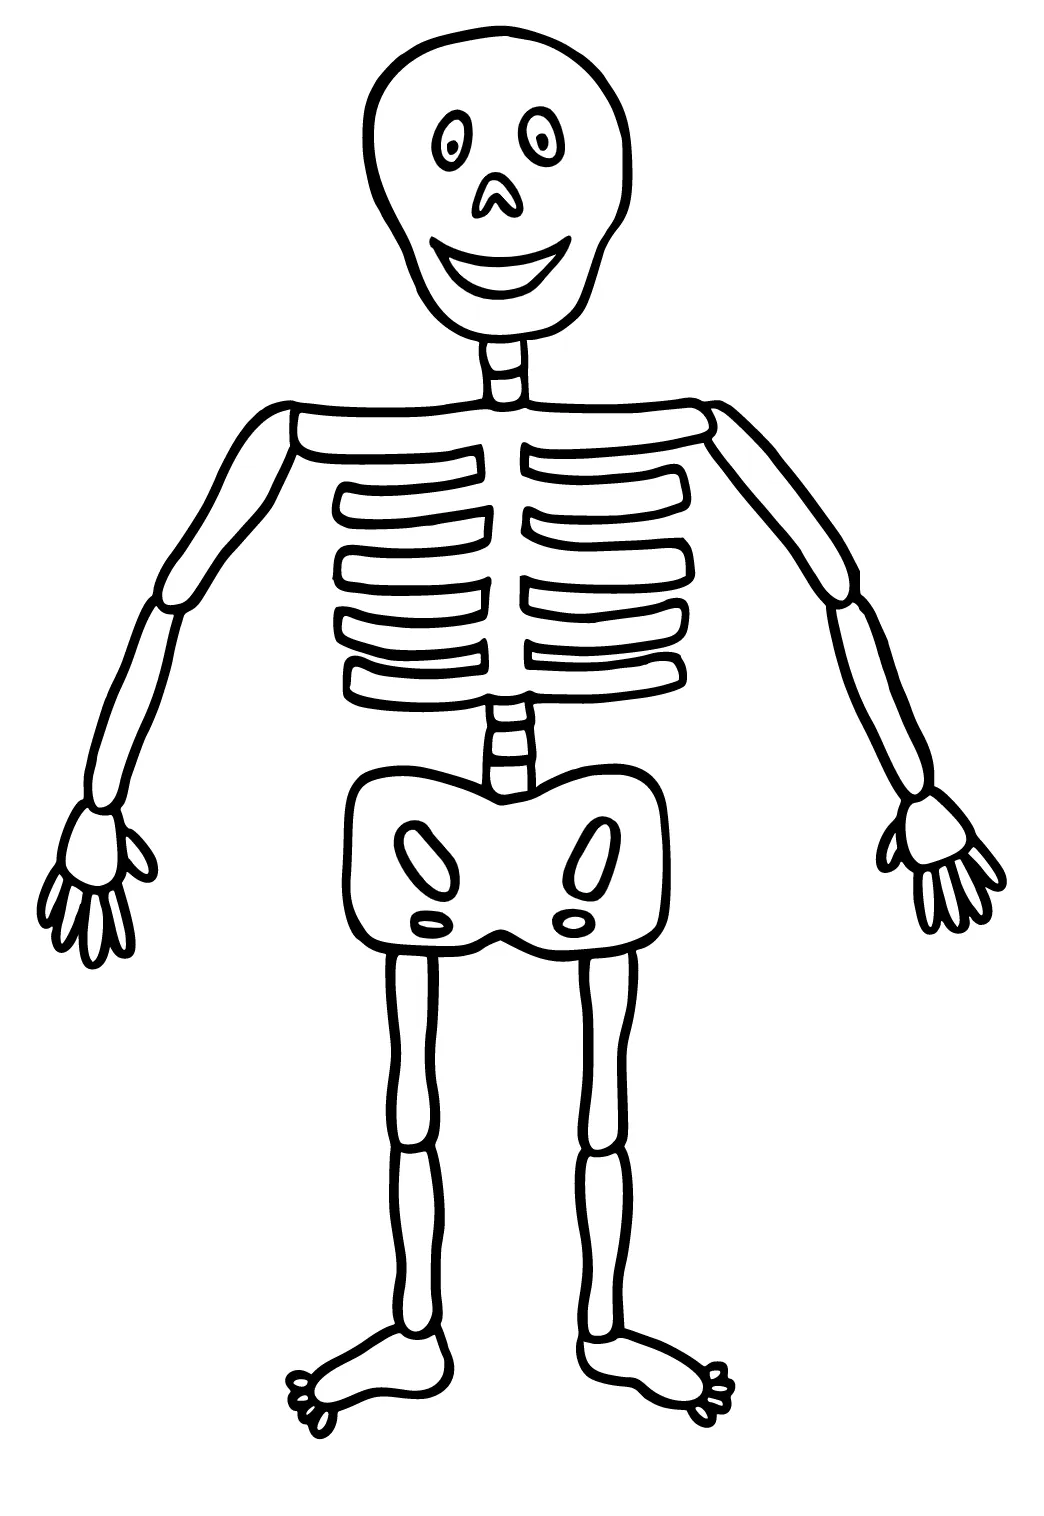 Dibujo e Imagen Esqueleto Lindo para Colorear y Imprimir Gratis para  Adultos y Niños - Lystok.com